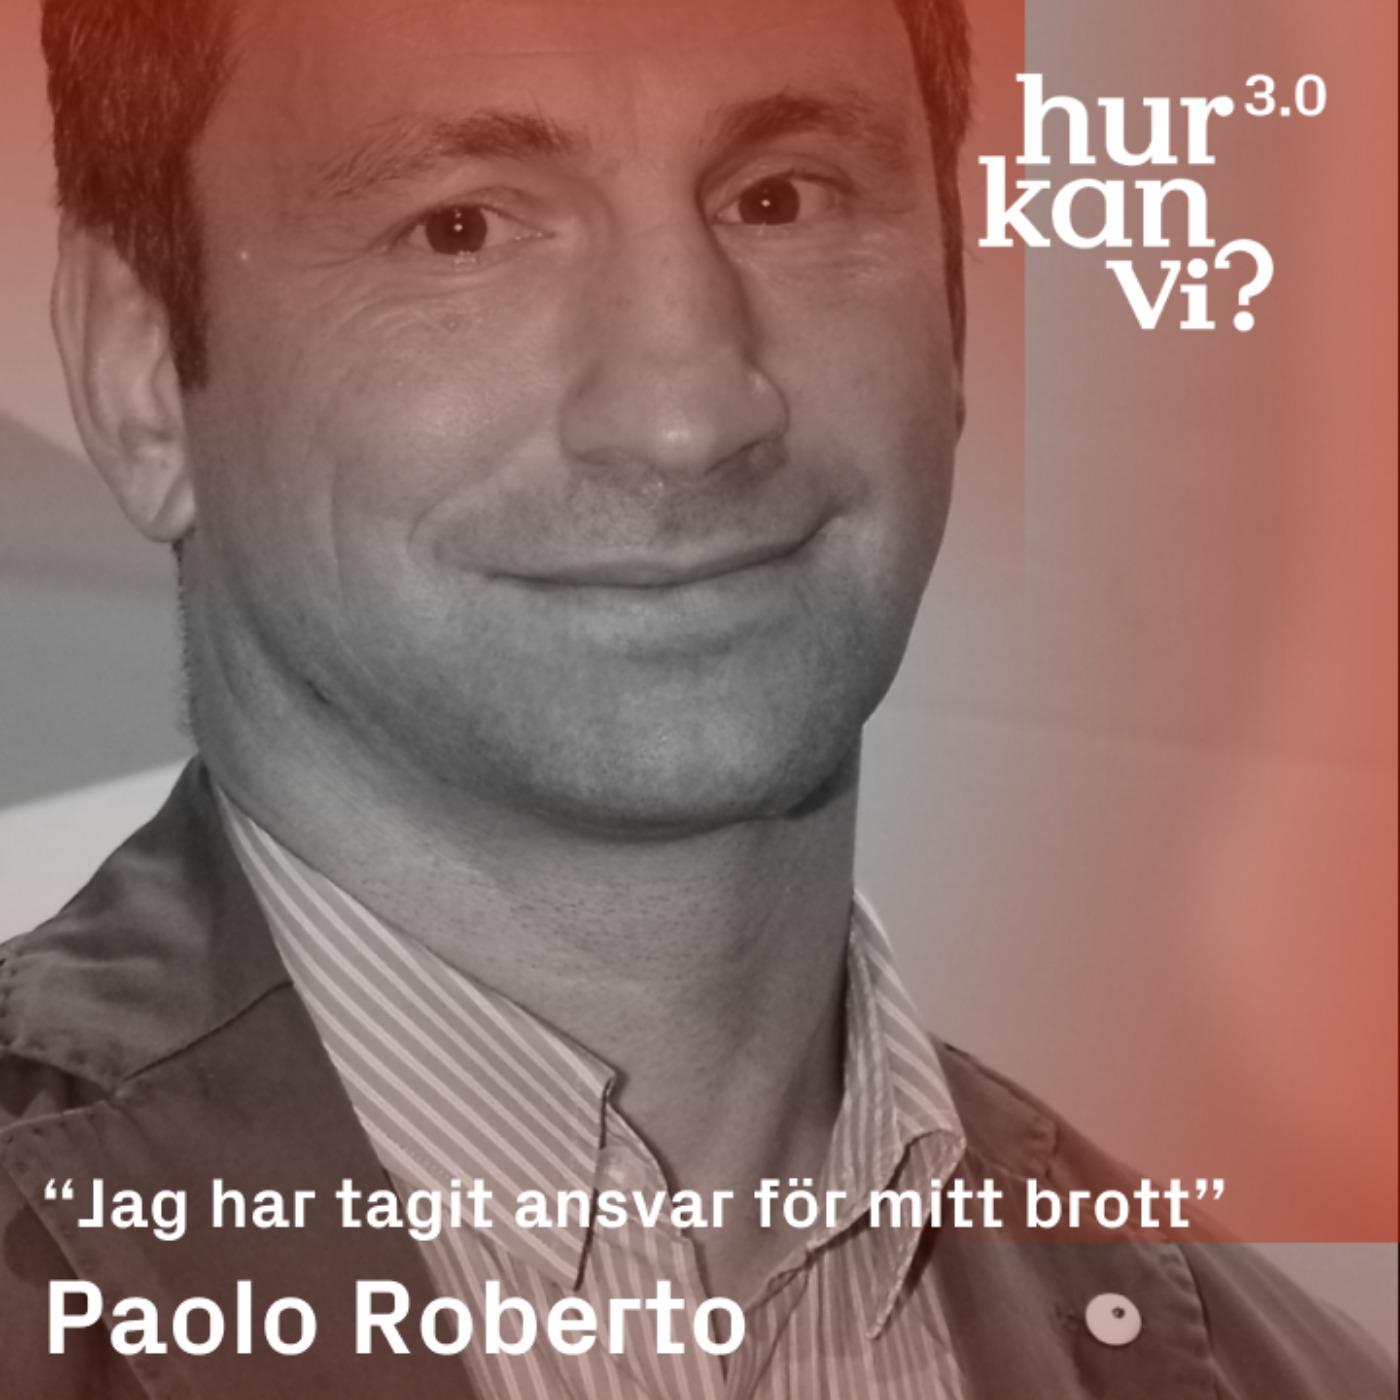 Paolo Roberto - “Jag har tagit ansvar för mitt brott”